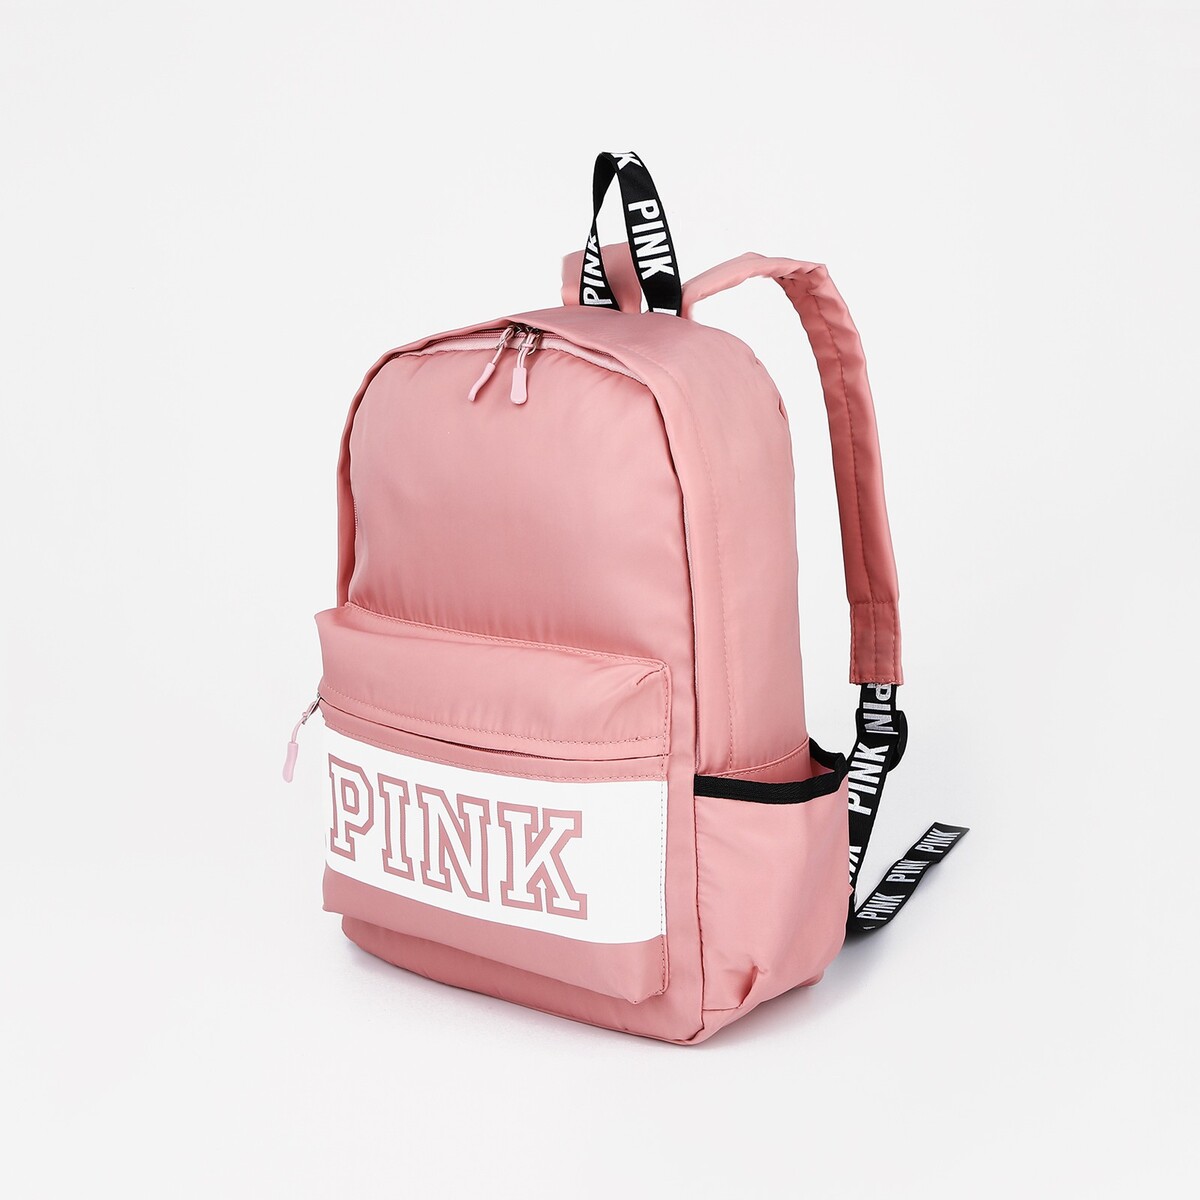 Рюкзак на молнии, наружный карман, 2 боковых кармана, цвет розовый рюкзак школьный из текстиля на молнии наружный карман сиреневый розовый